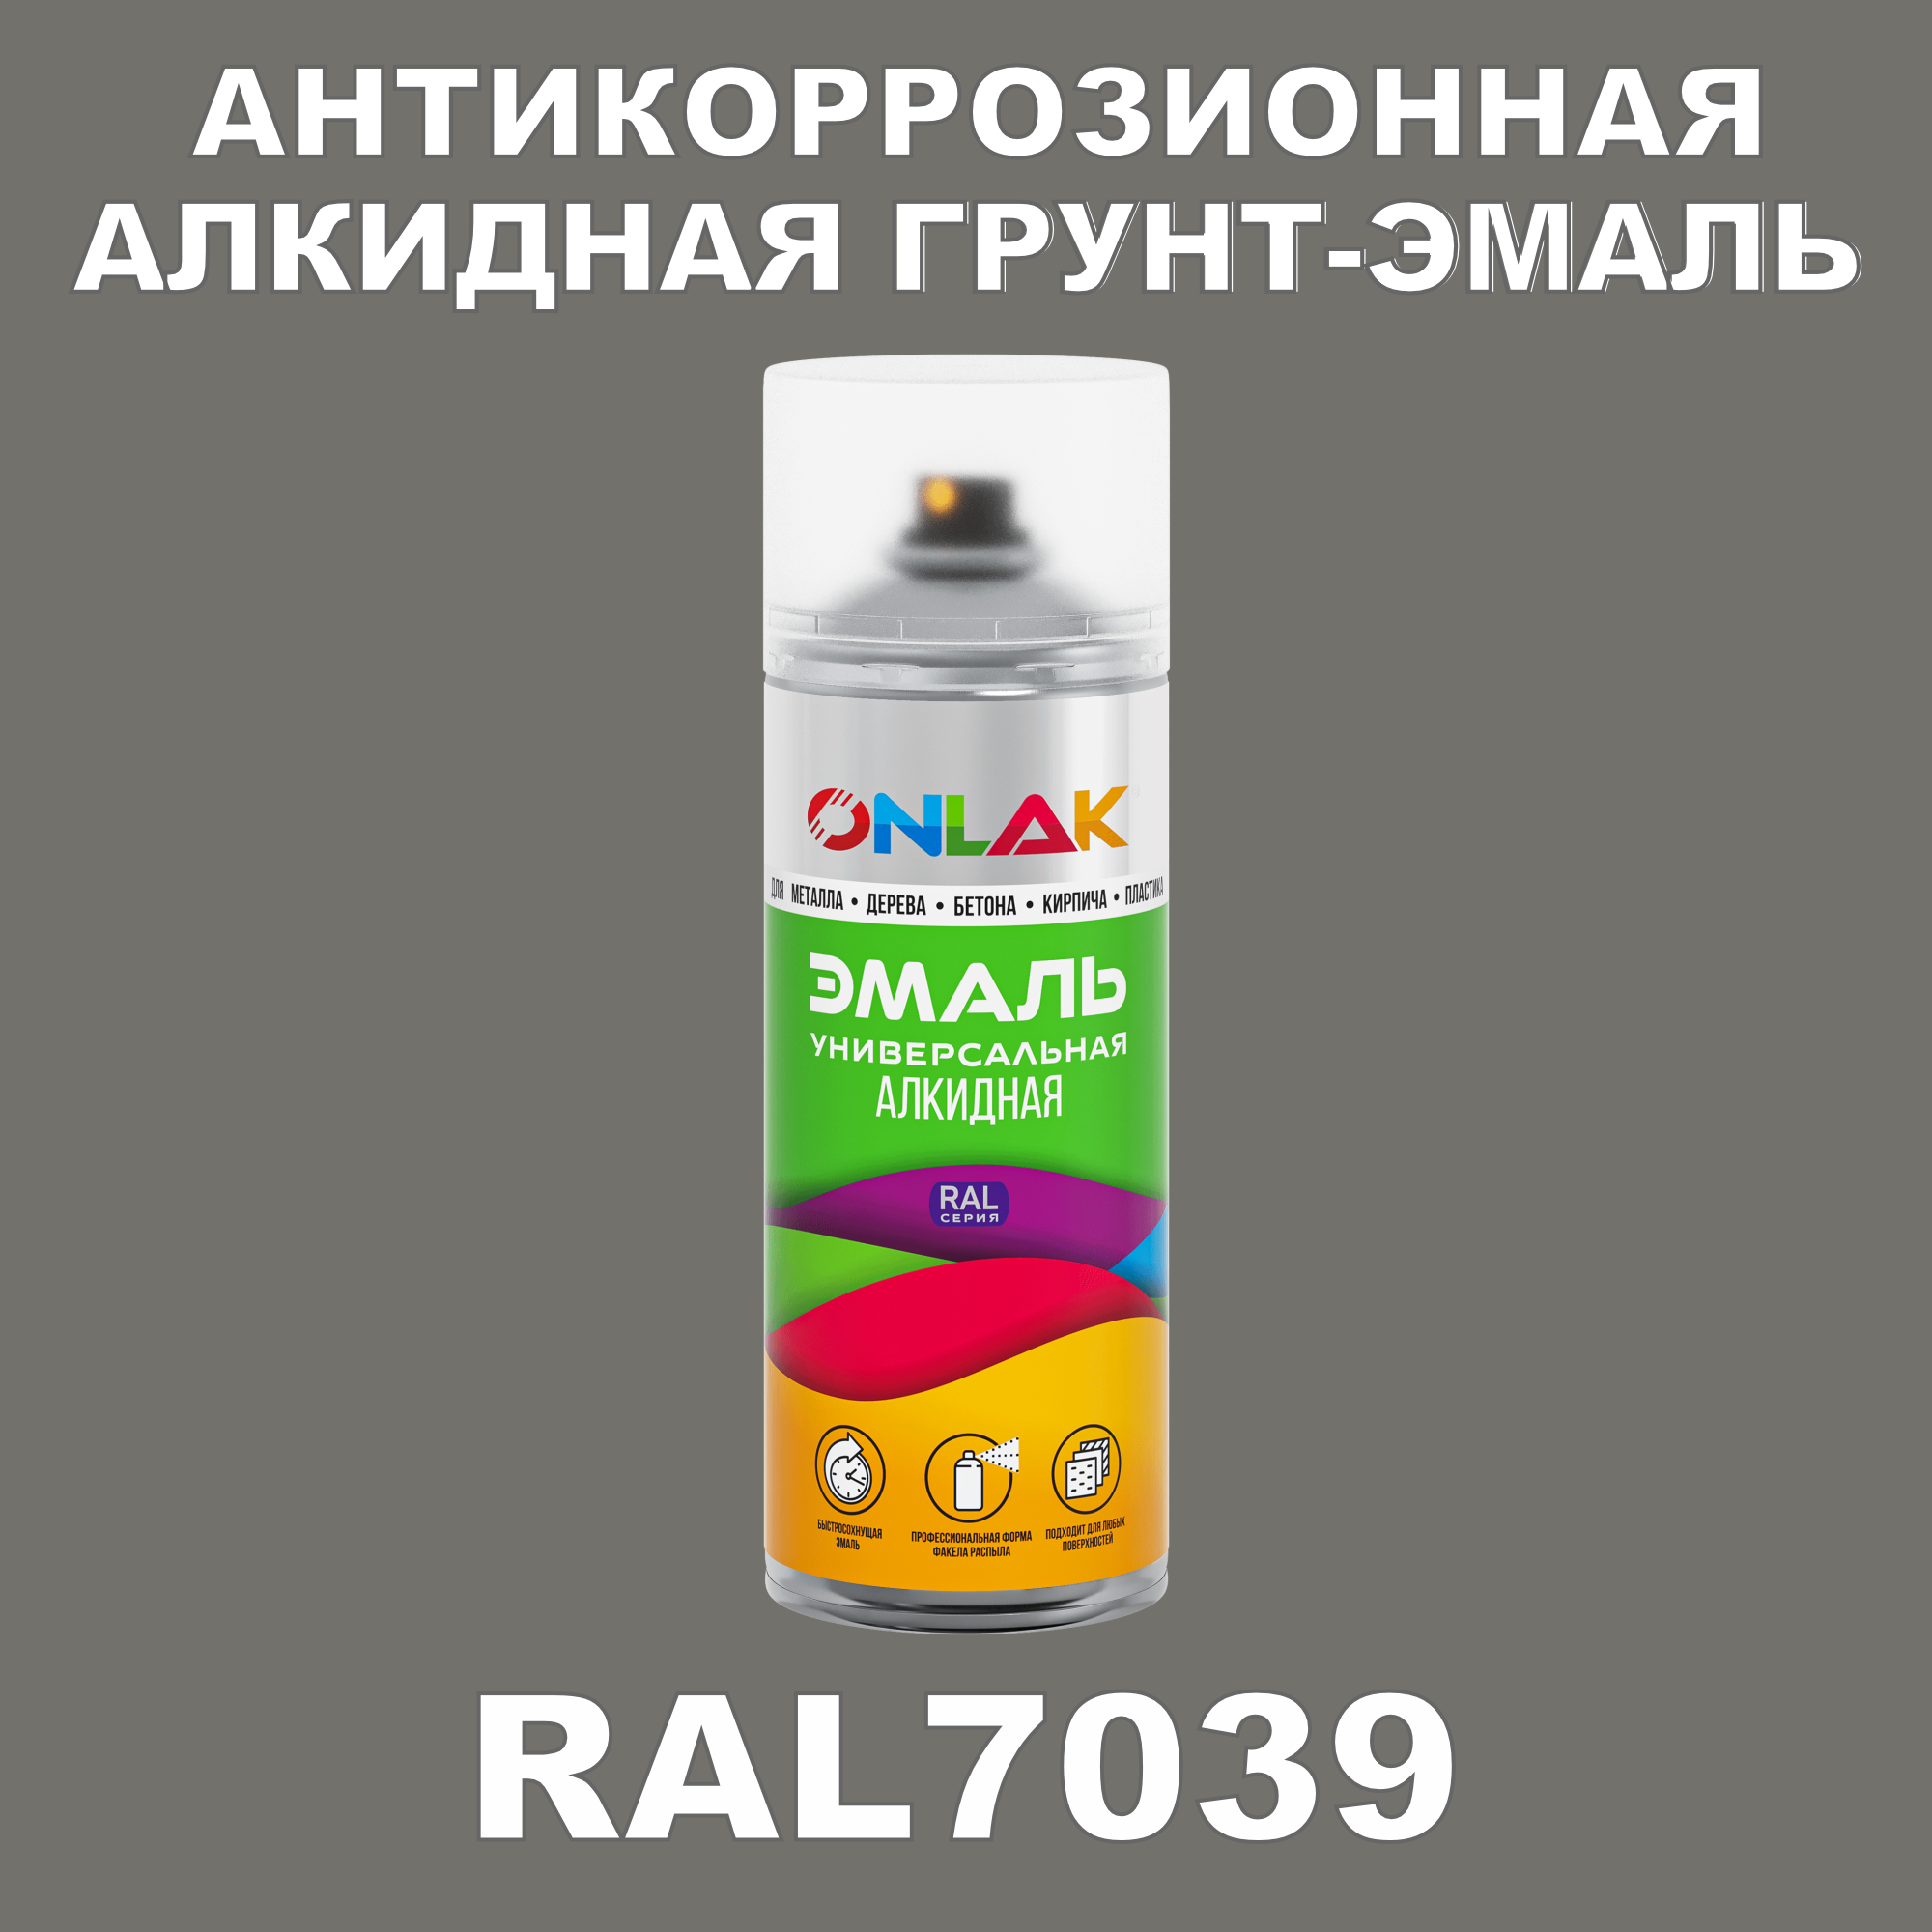 Антикоррозионная грунт-эмаль ONLAK RAL7039 полуматовая для металла и защиты от ржавчины